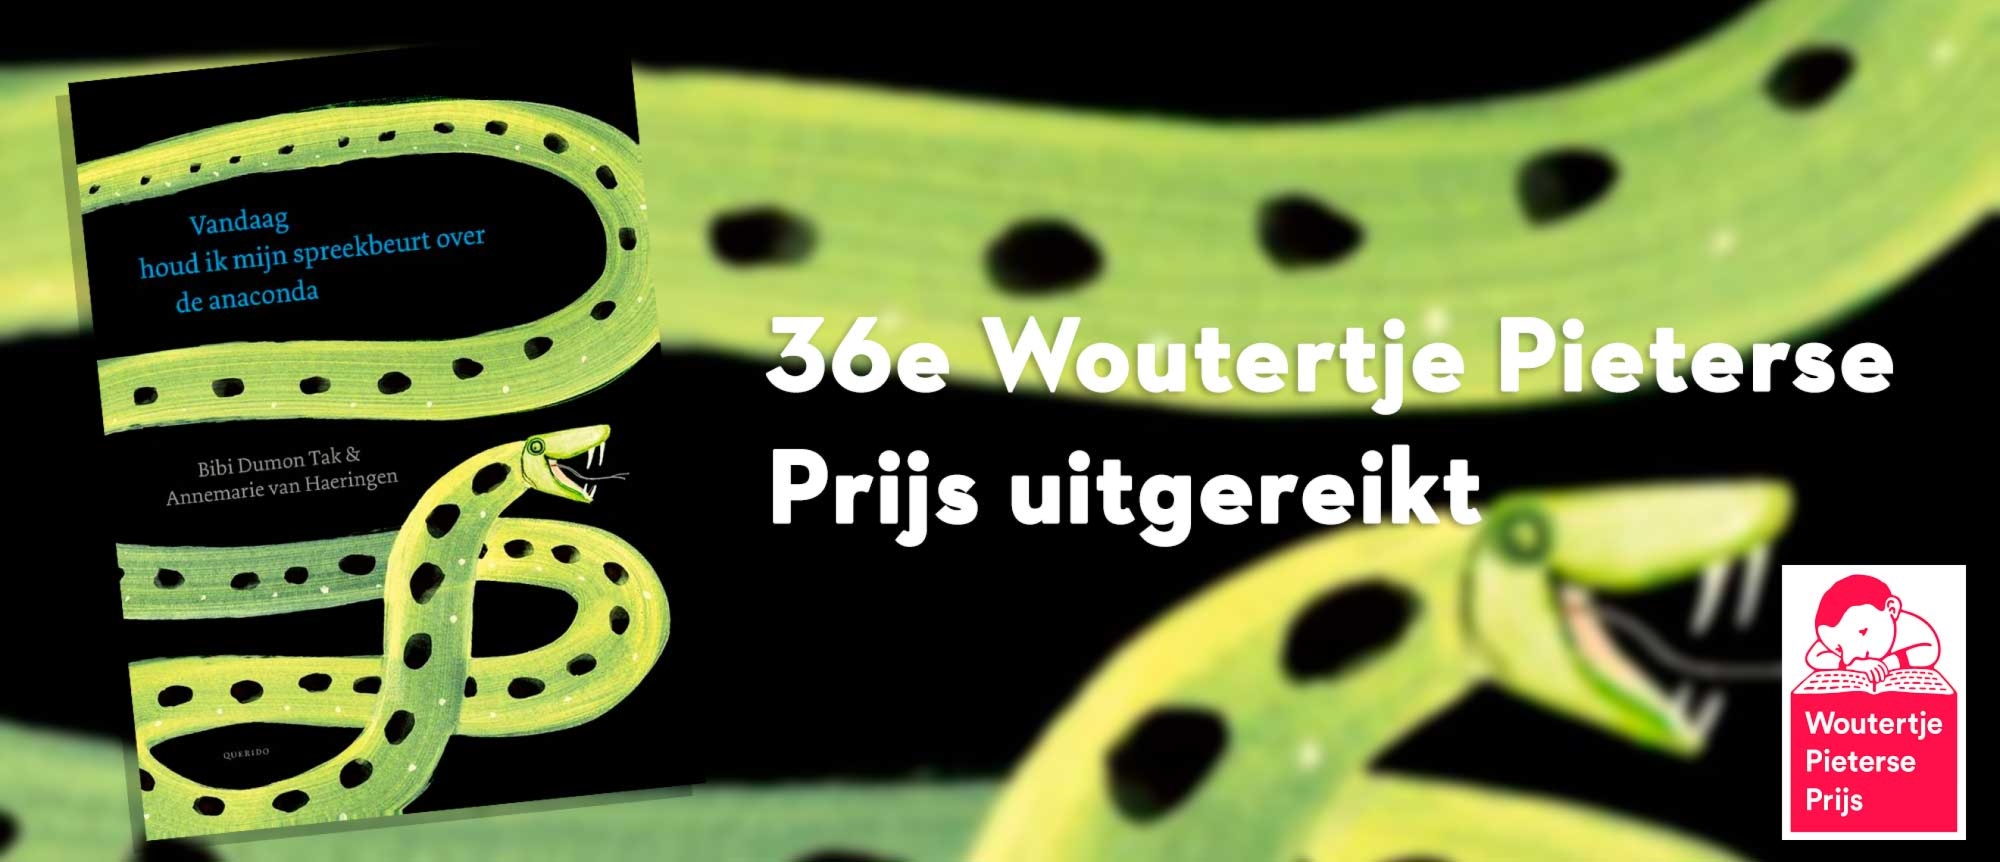 36e Woutertje Pieterse Prijs uitgereikt